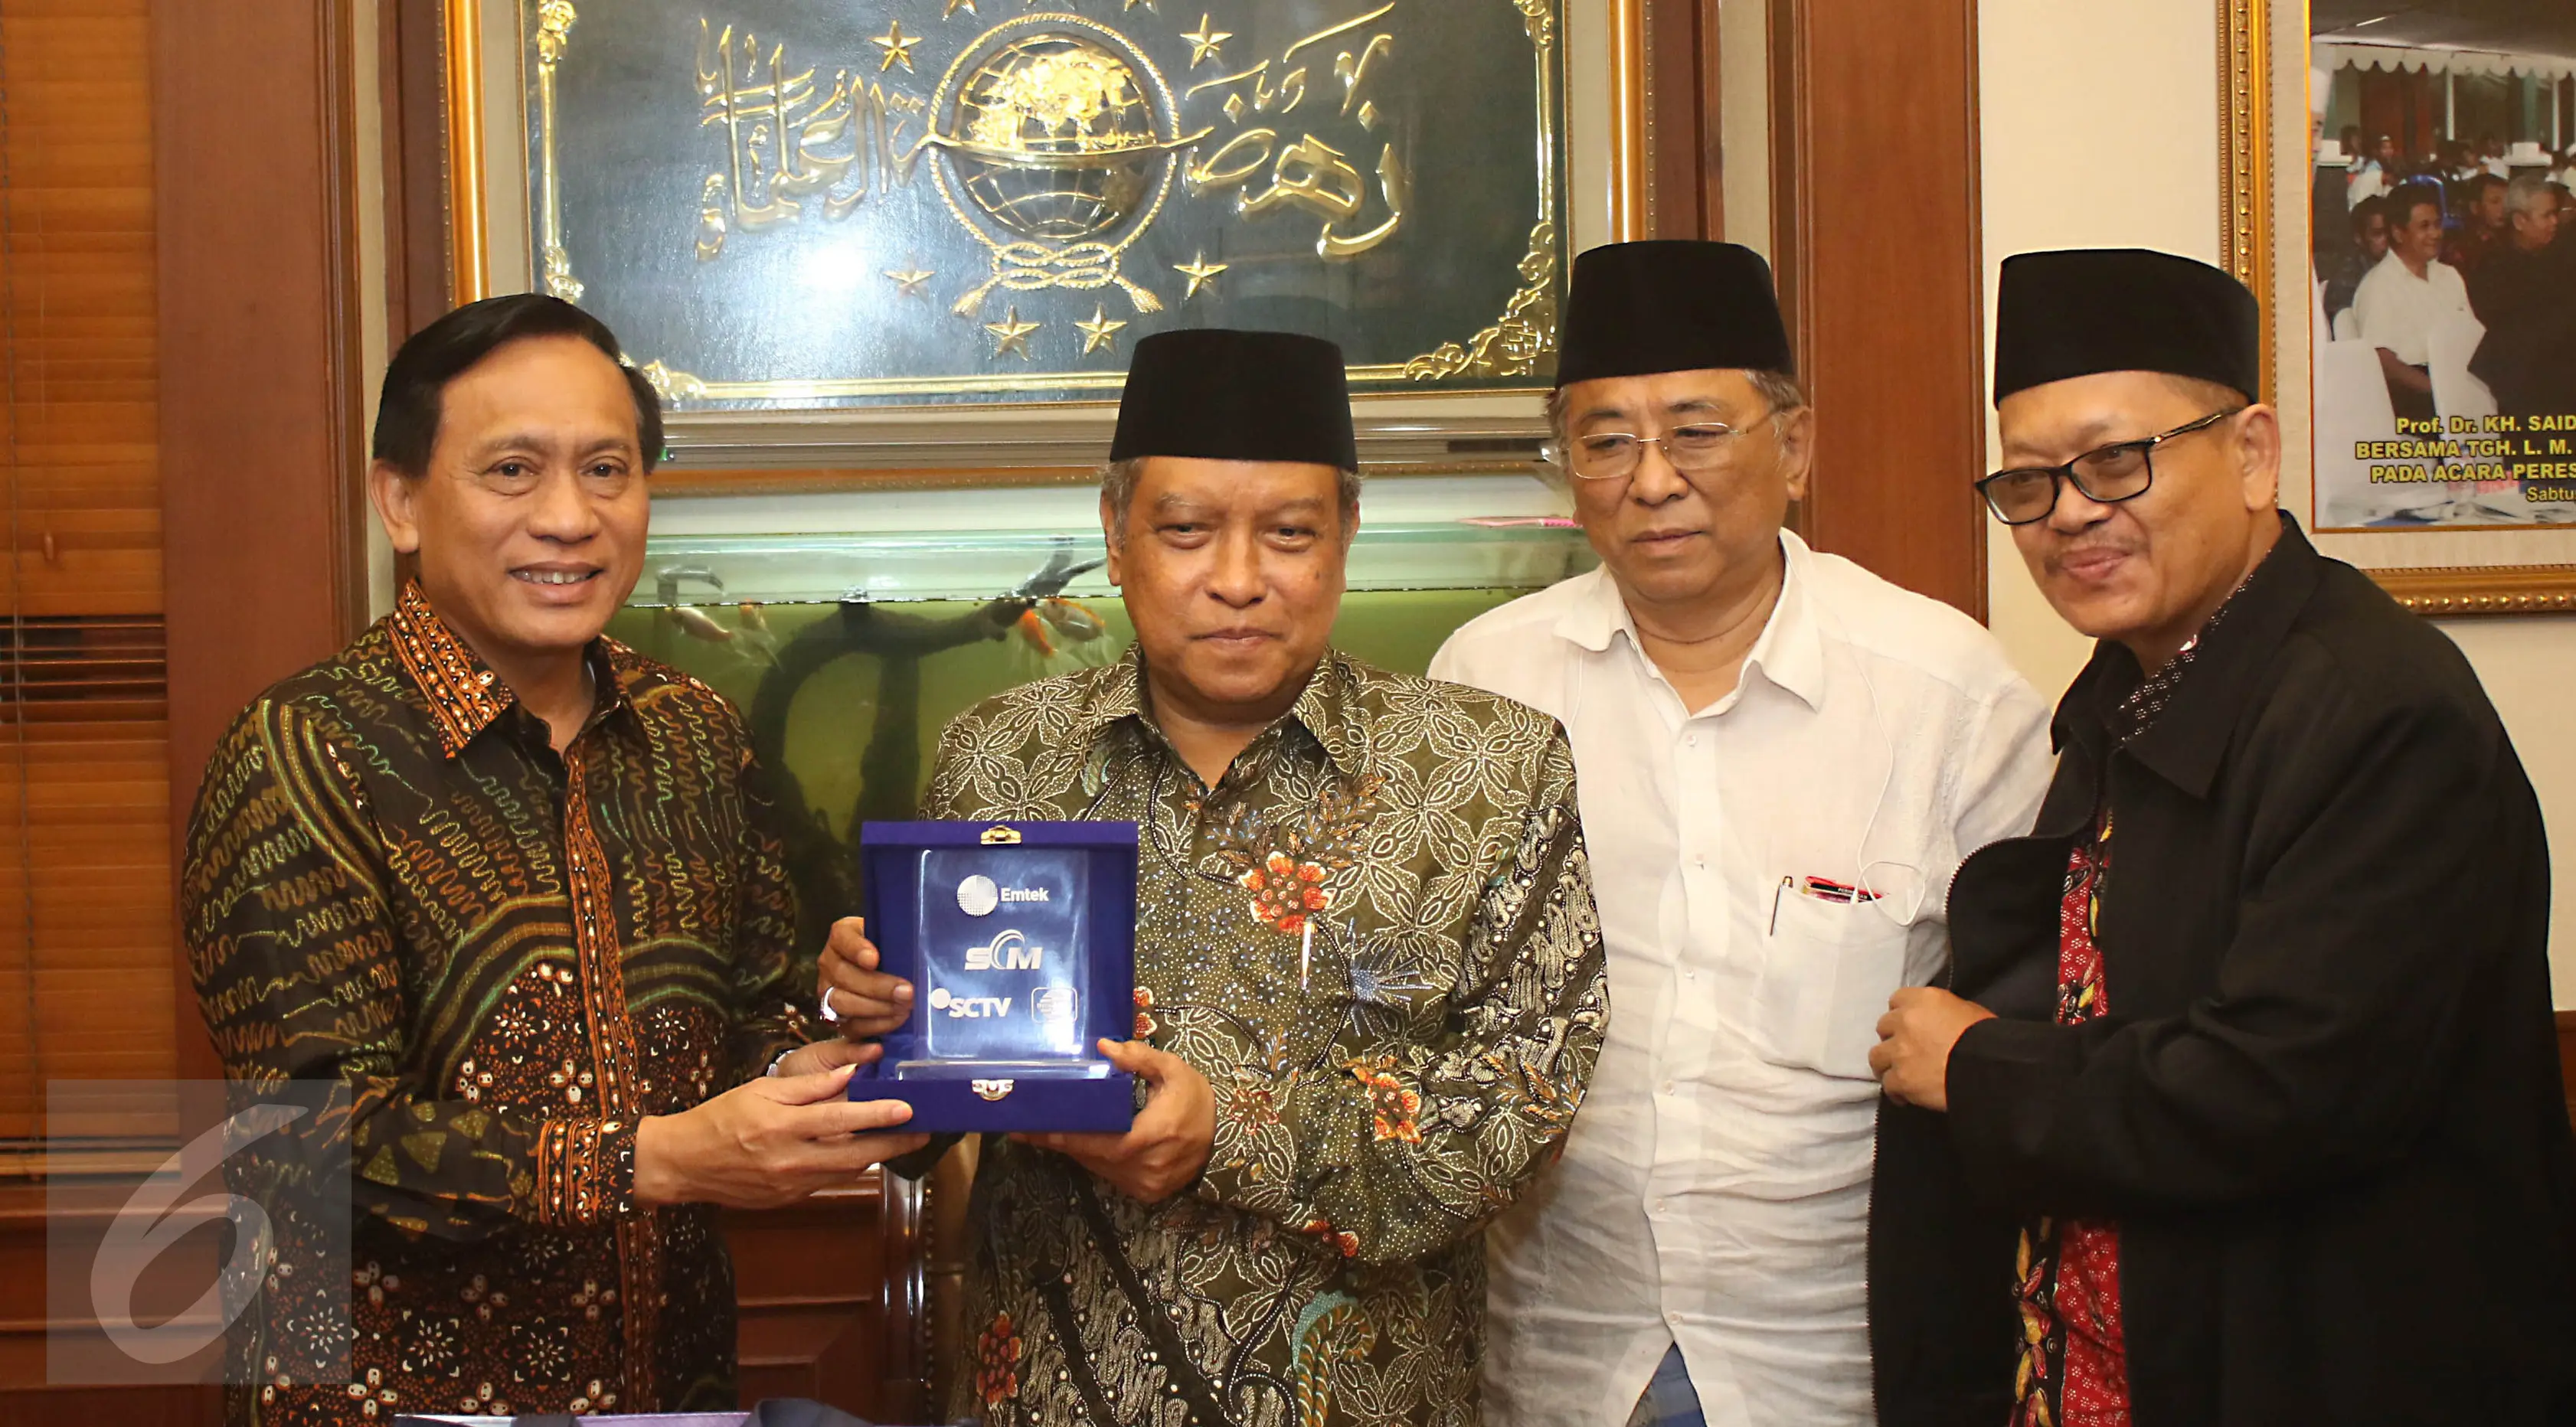 Direktur Utama Indosiar Imam Sudjarwo memberikan cinderamata kepada Ketua Umum PBNU Said Aqil Siradj di kantor PBNU Jakarta, Senin (17/4). Pertemuan EMTEK Grup dengan PBNU dalam rangka silaturahmi. (/Angga Yuniar)